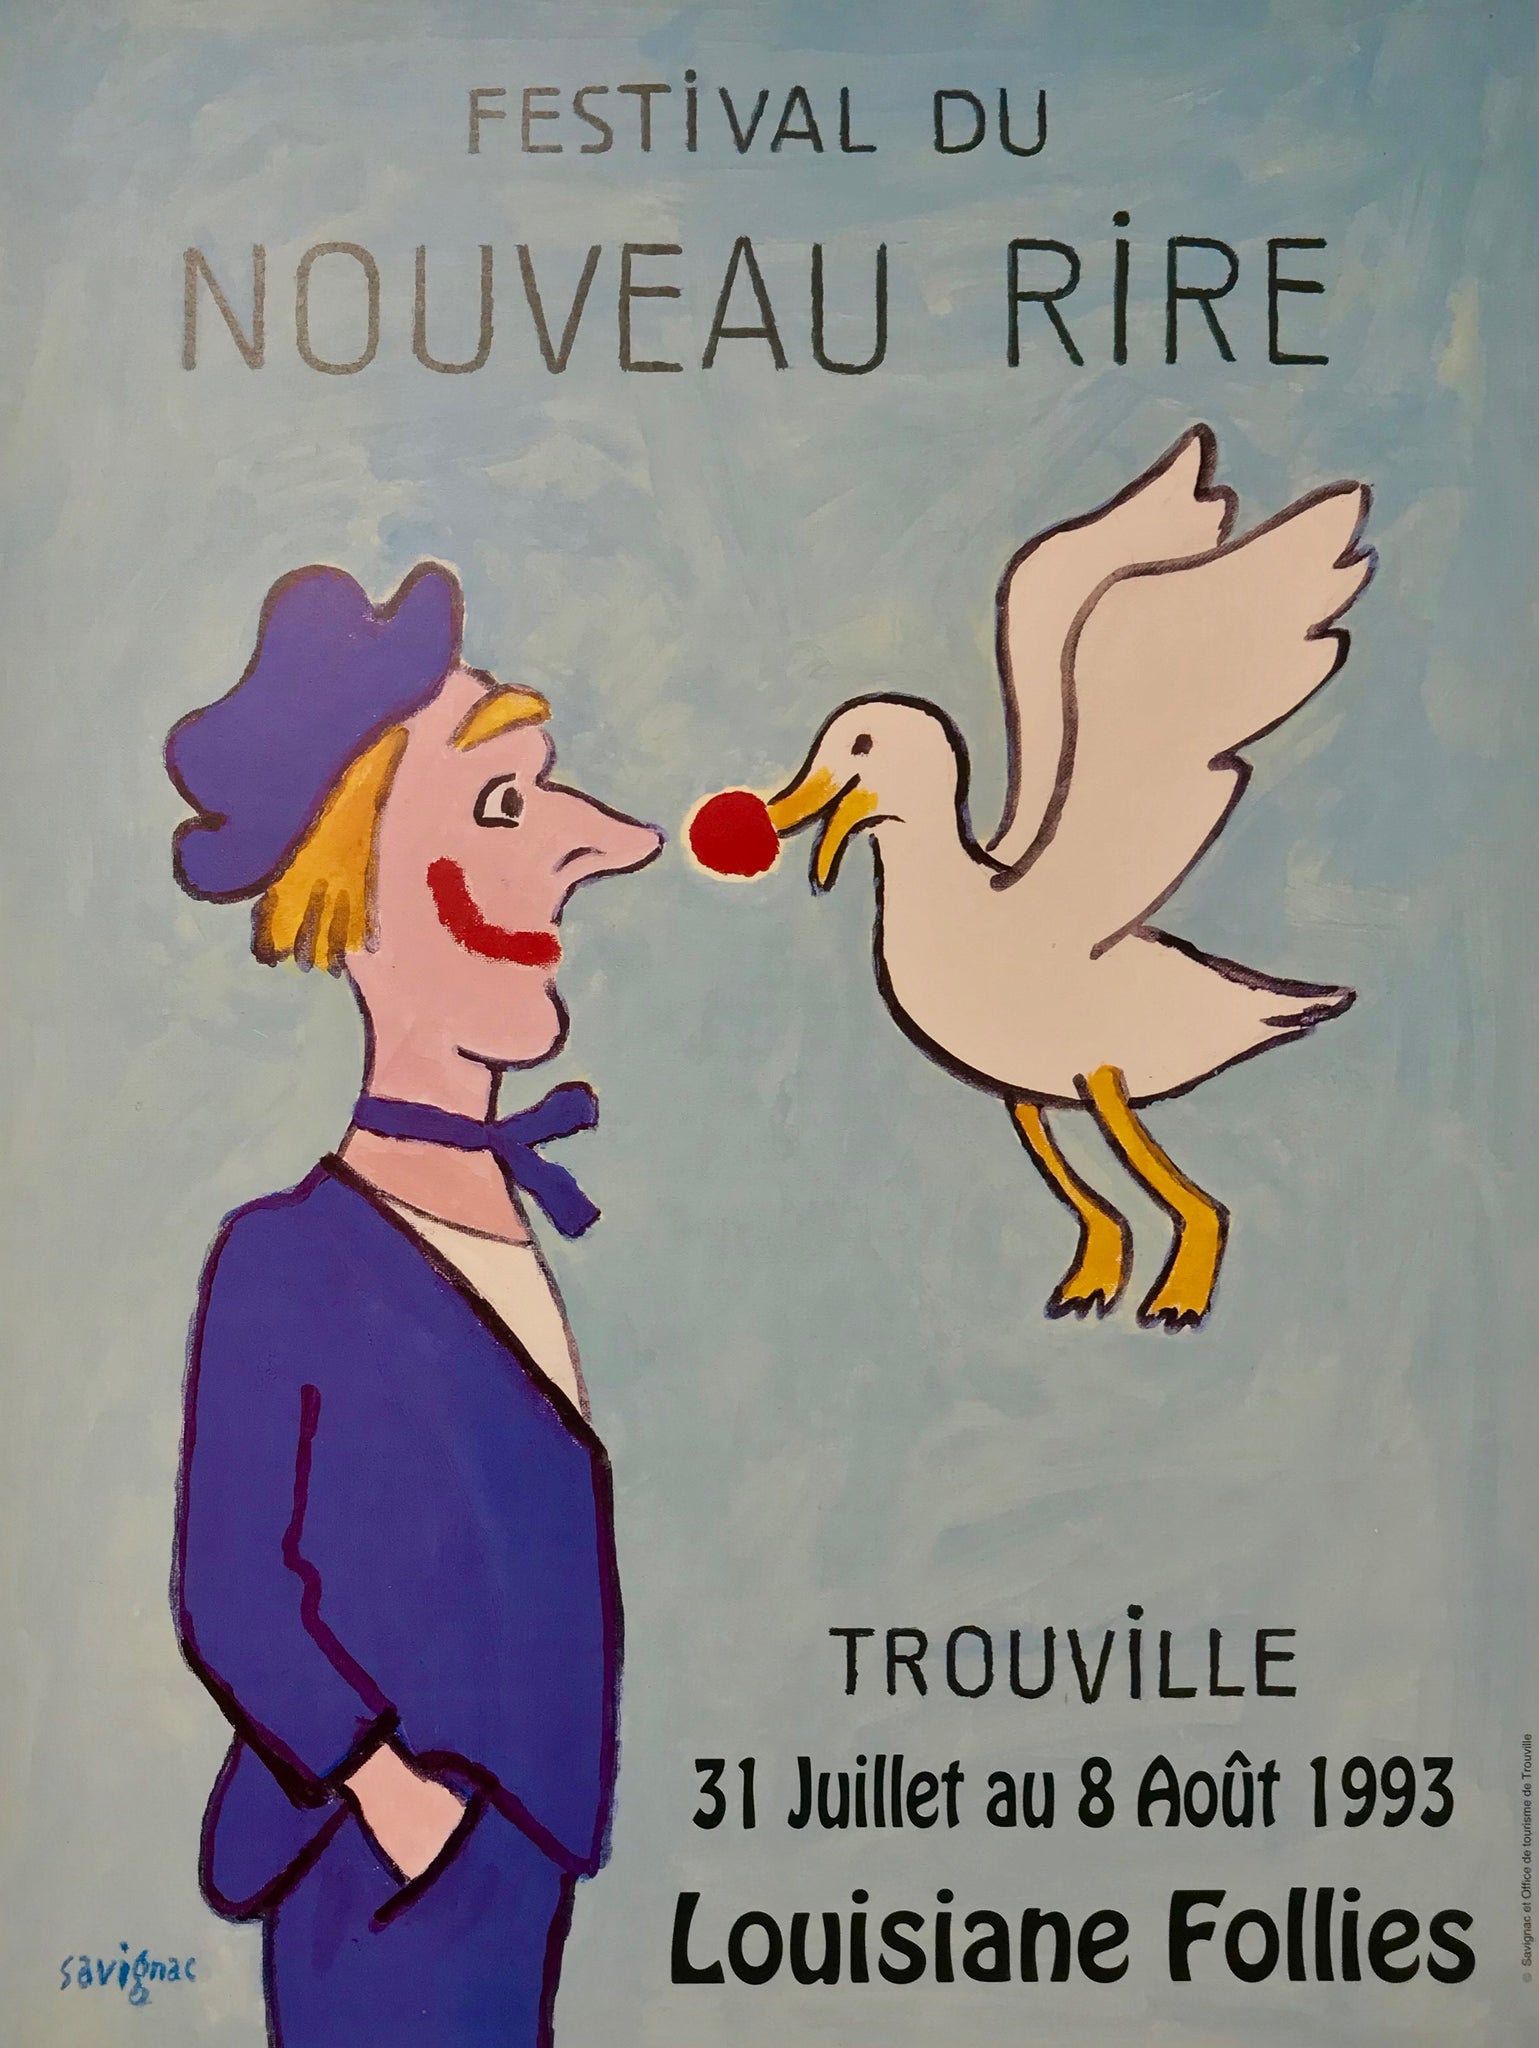 Affiche réalisée par Raymond Savignac à l'occasion du Festival du nouveau rire de Trouville du 31 Juillet au 8 Aout 1993